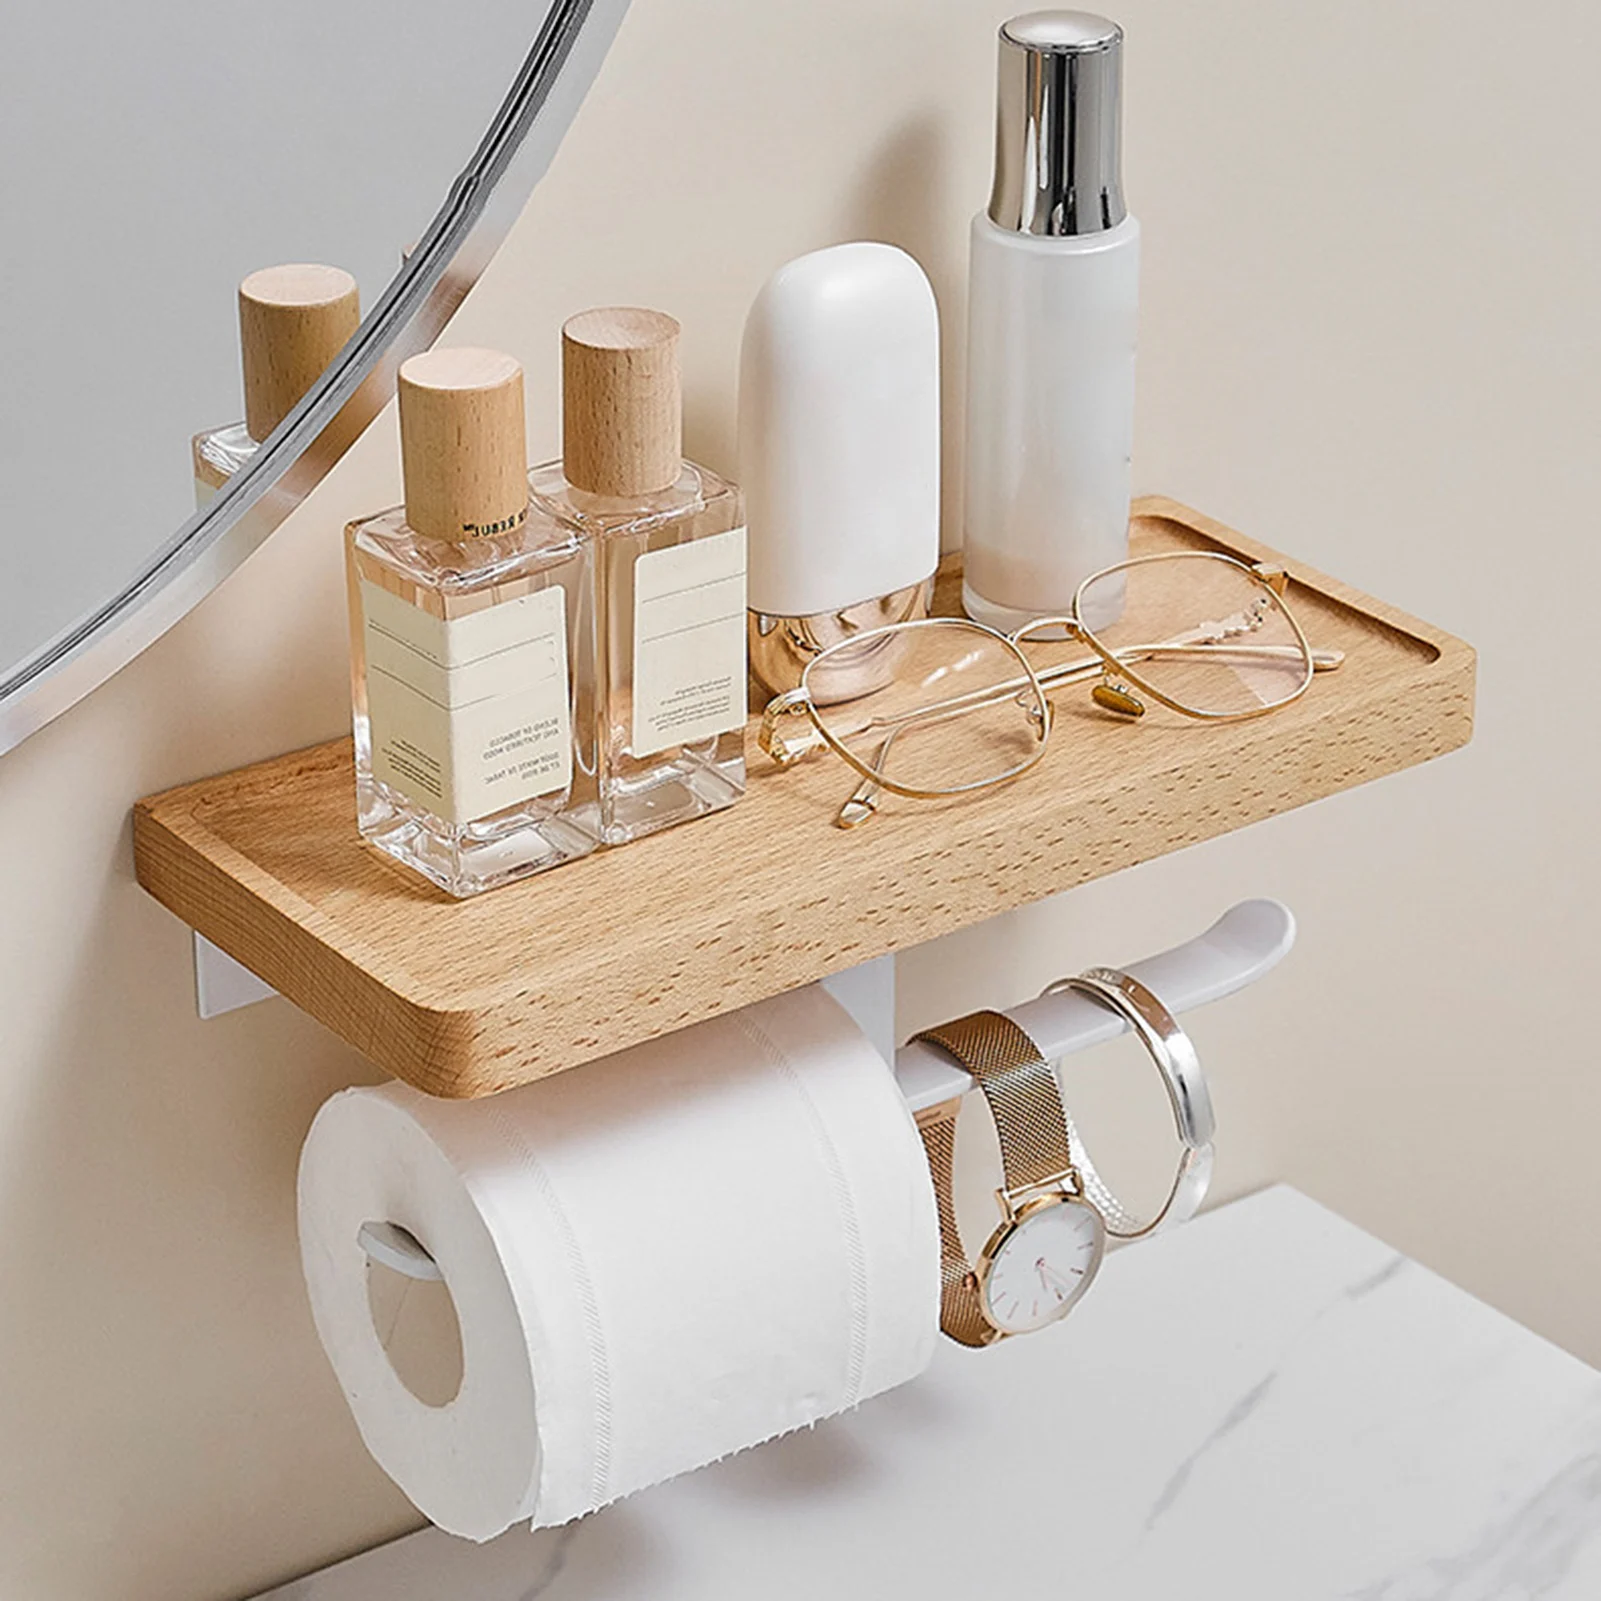 https://ae01.alicdn.com/kf/Sf835954766e041b5add772c5d931649bc/Wall-Mounted-Toilet-Paper-Holder-Tissue-Paper-Holder-Roll-Holder-With-Phone-Storage-Shelf-Bathroom-Rack.jpg